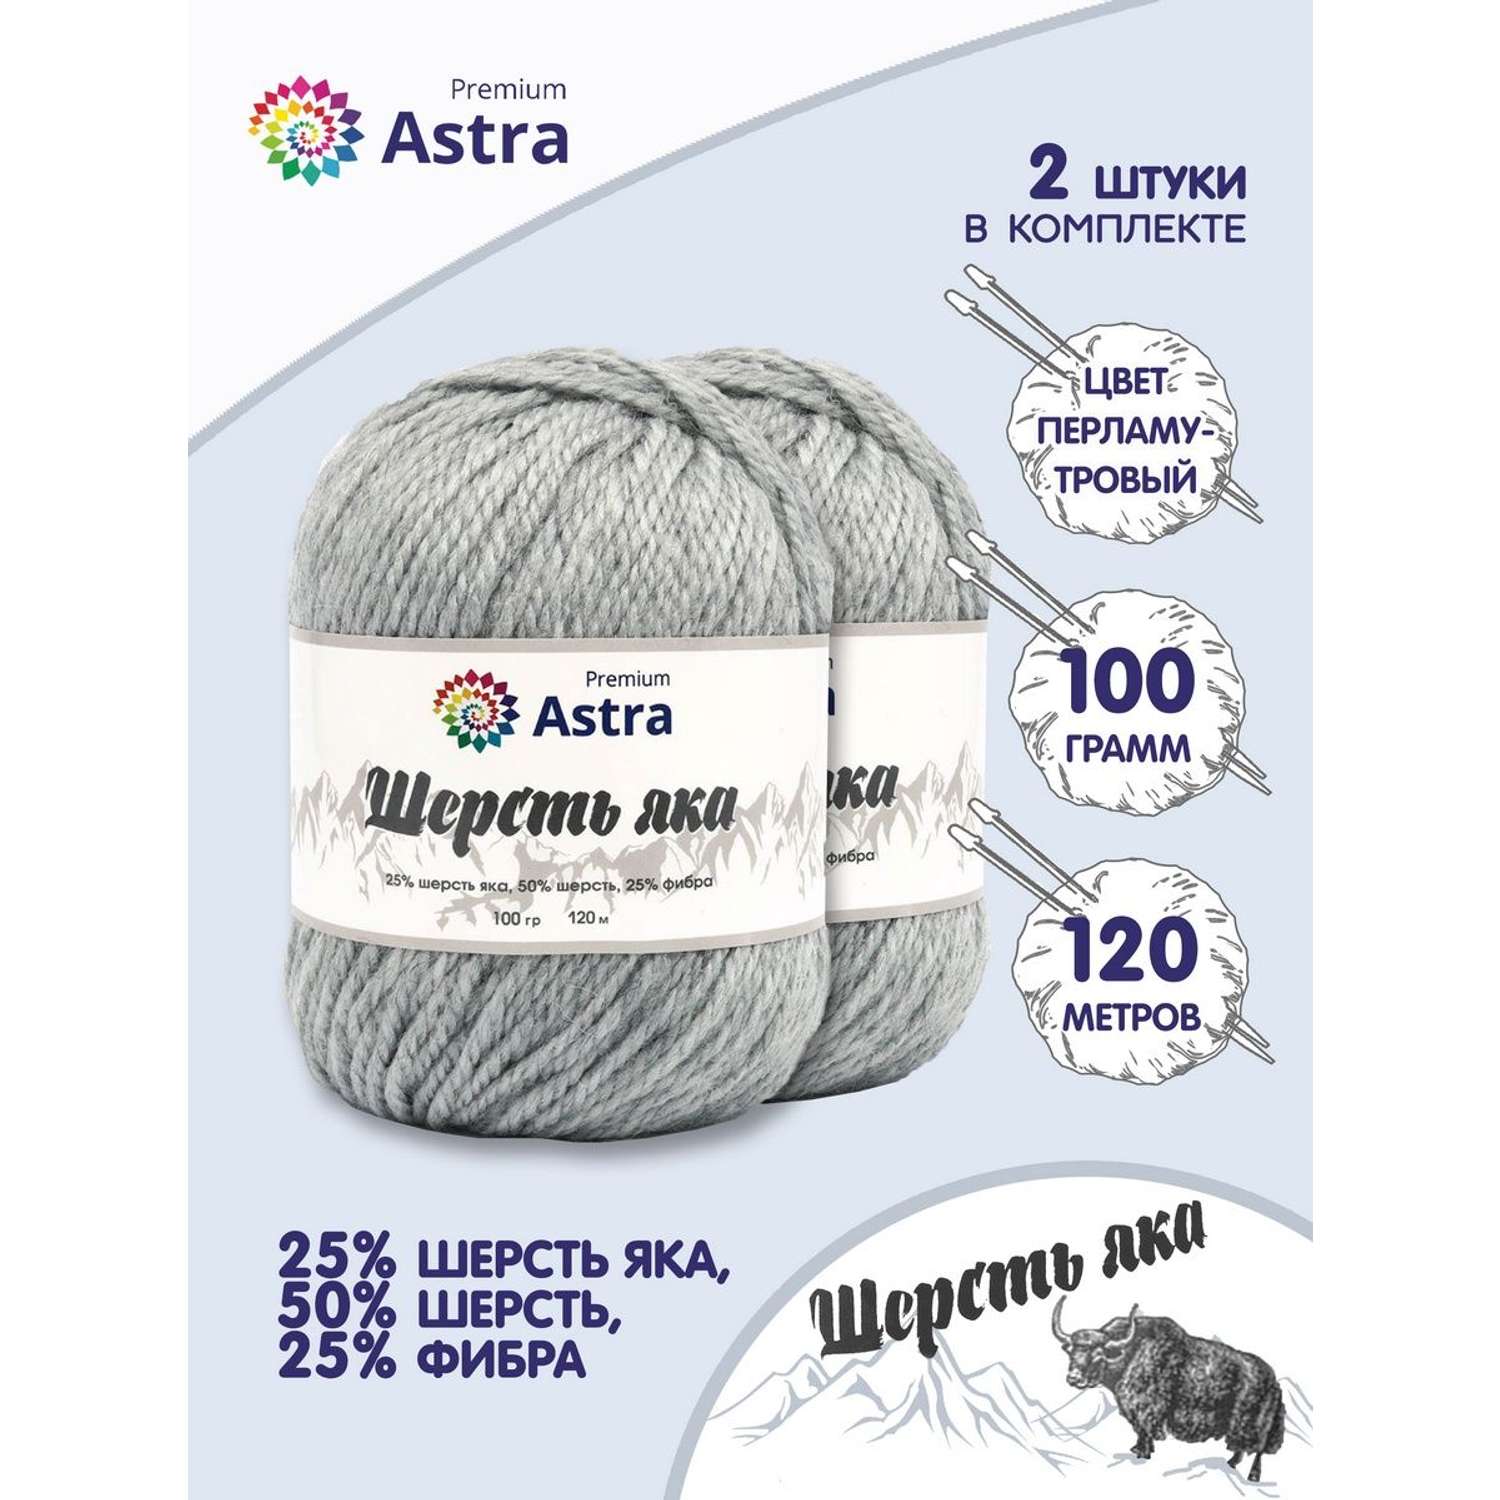 Пряжа Astra Premium Шерсть яка Yak wool теплая мягкая 100 г 120 м 20 перламутровый 2 мотка - фото 1